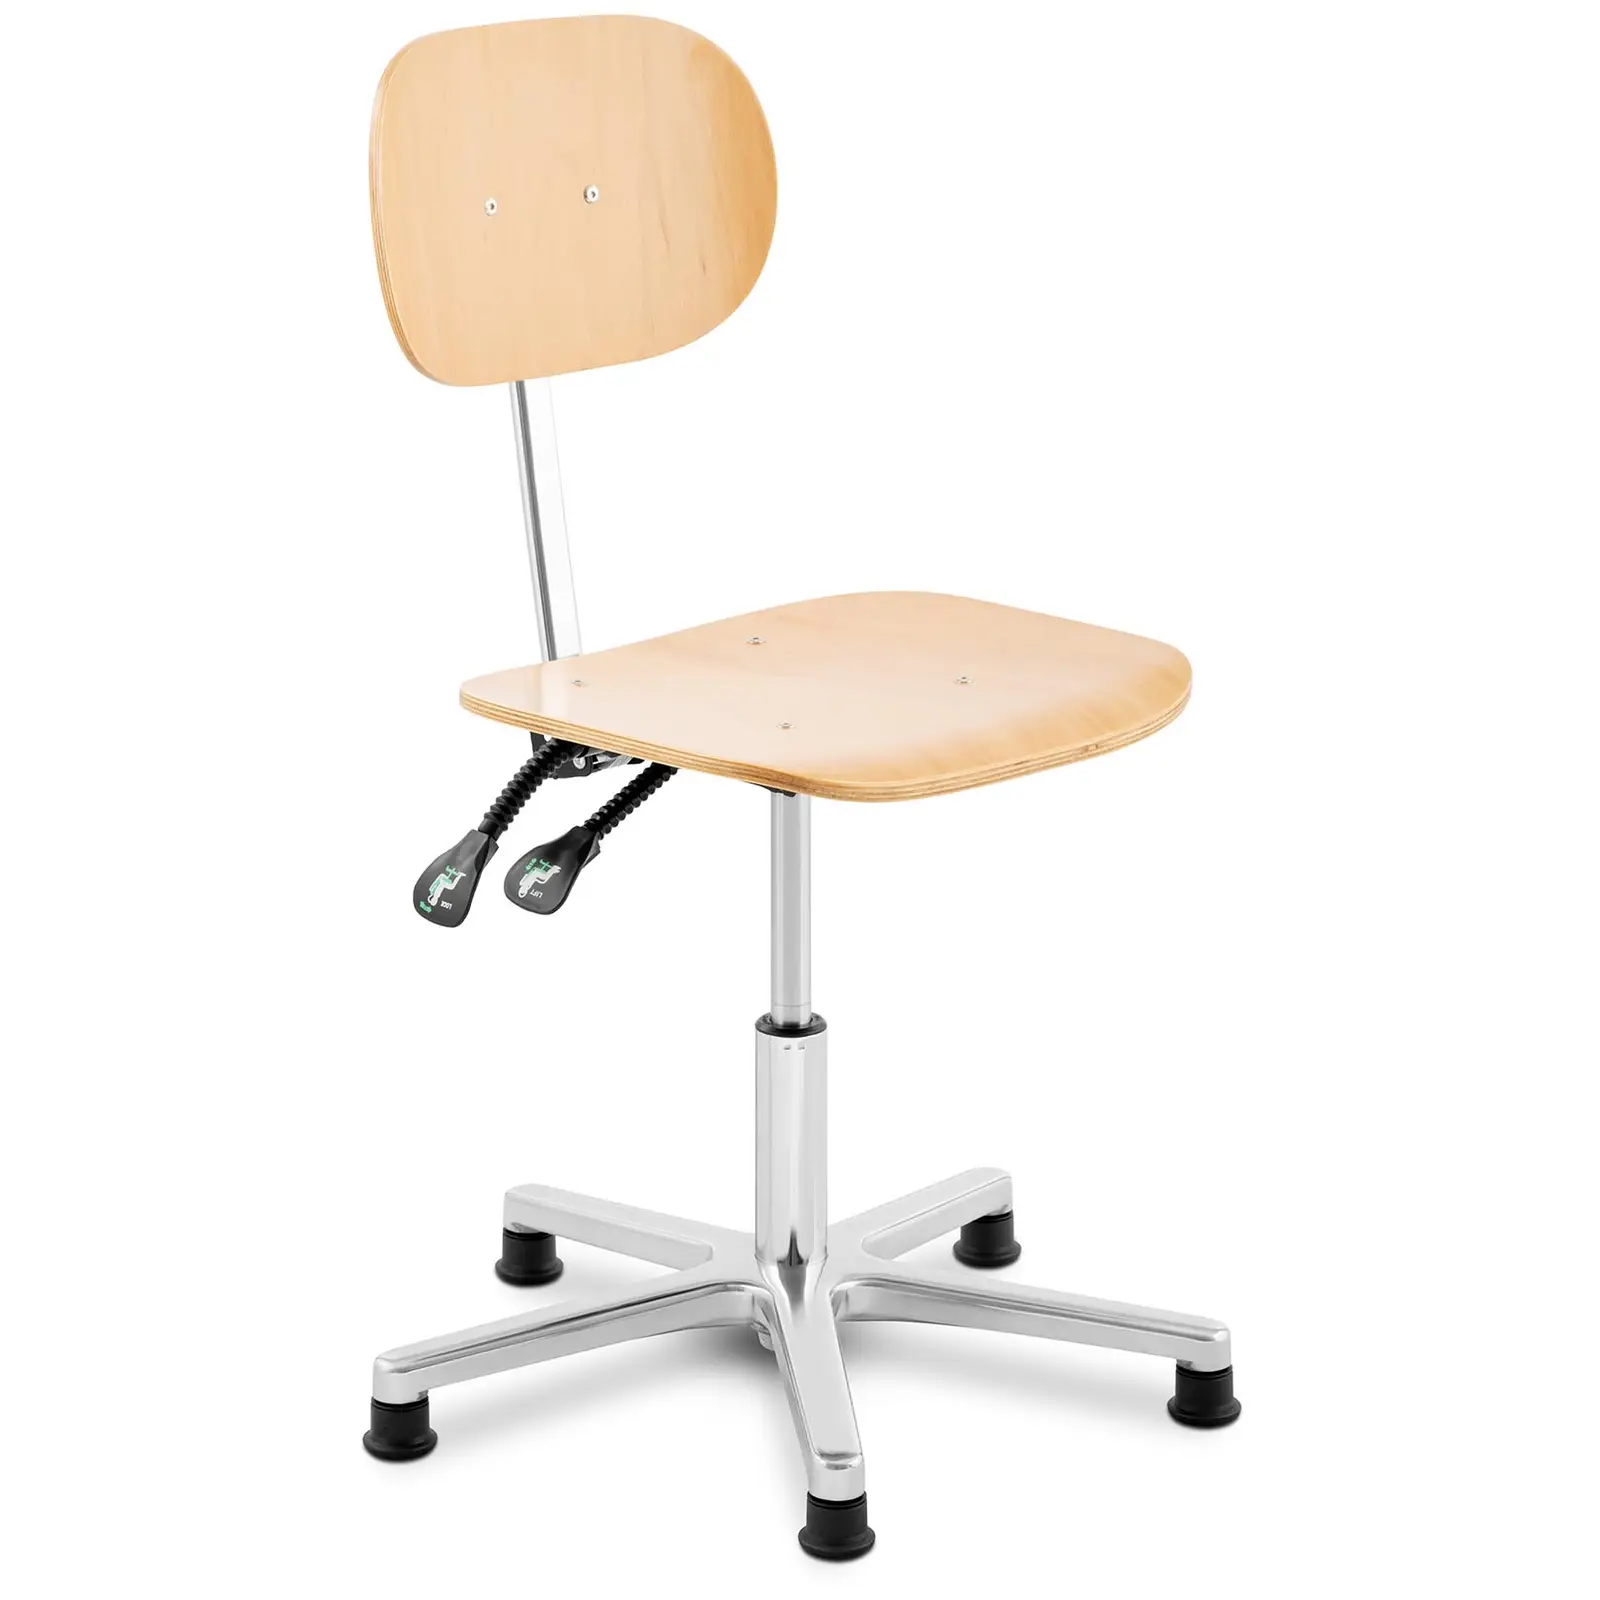 Cadeira de trabalho - 120 kg - madeira, elementos cromados - altura 362 - 498 mm